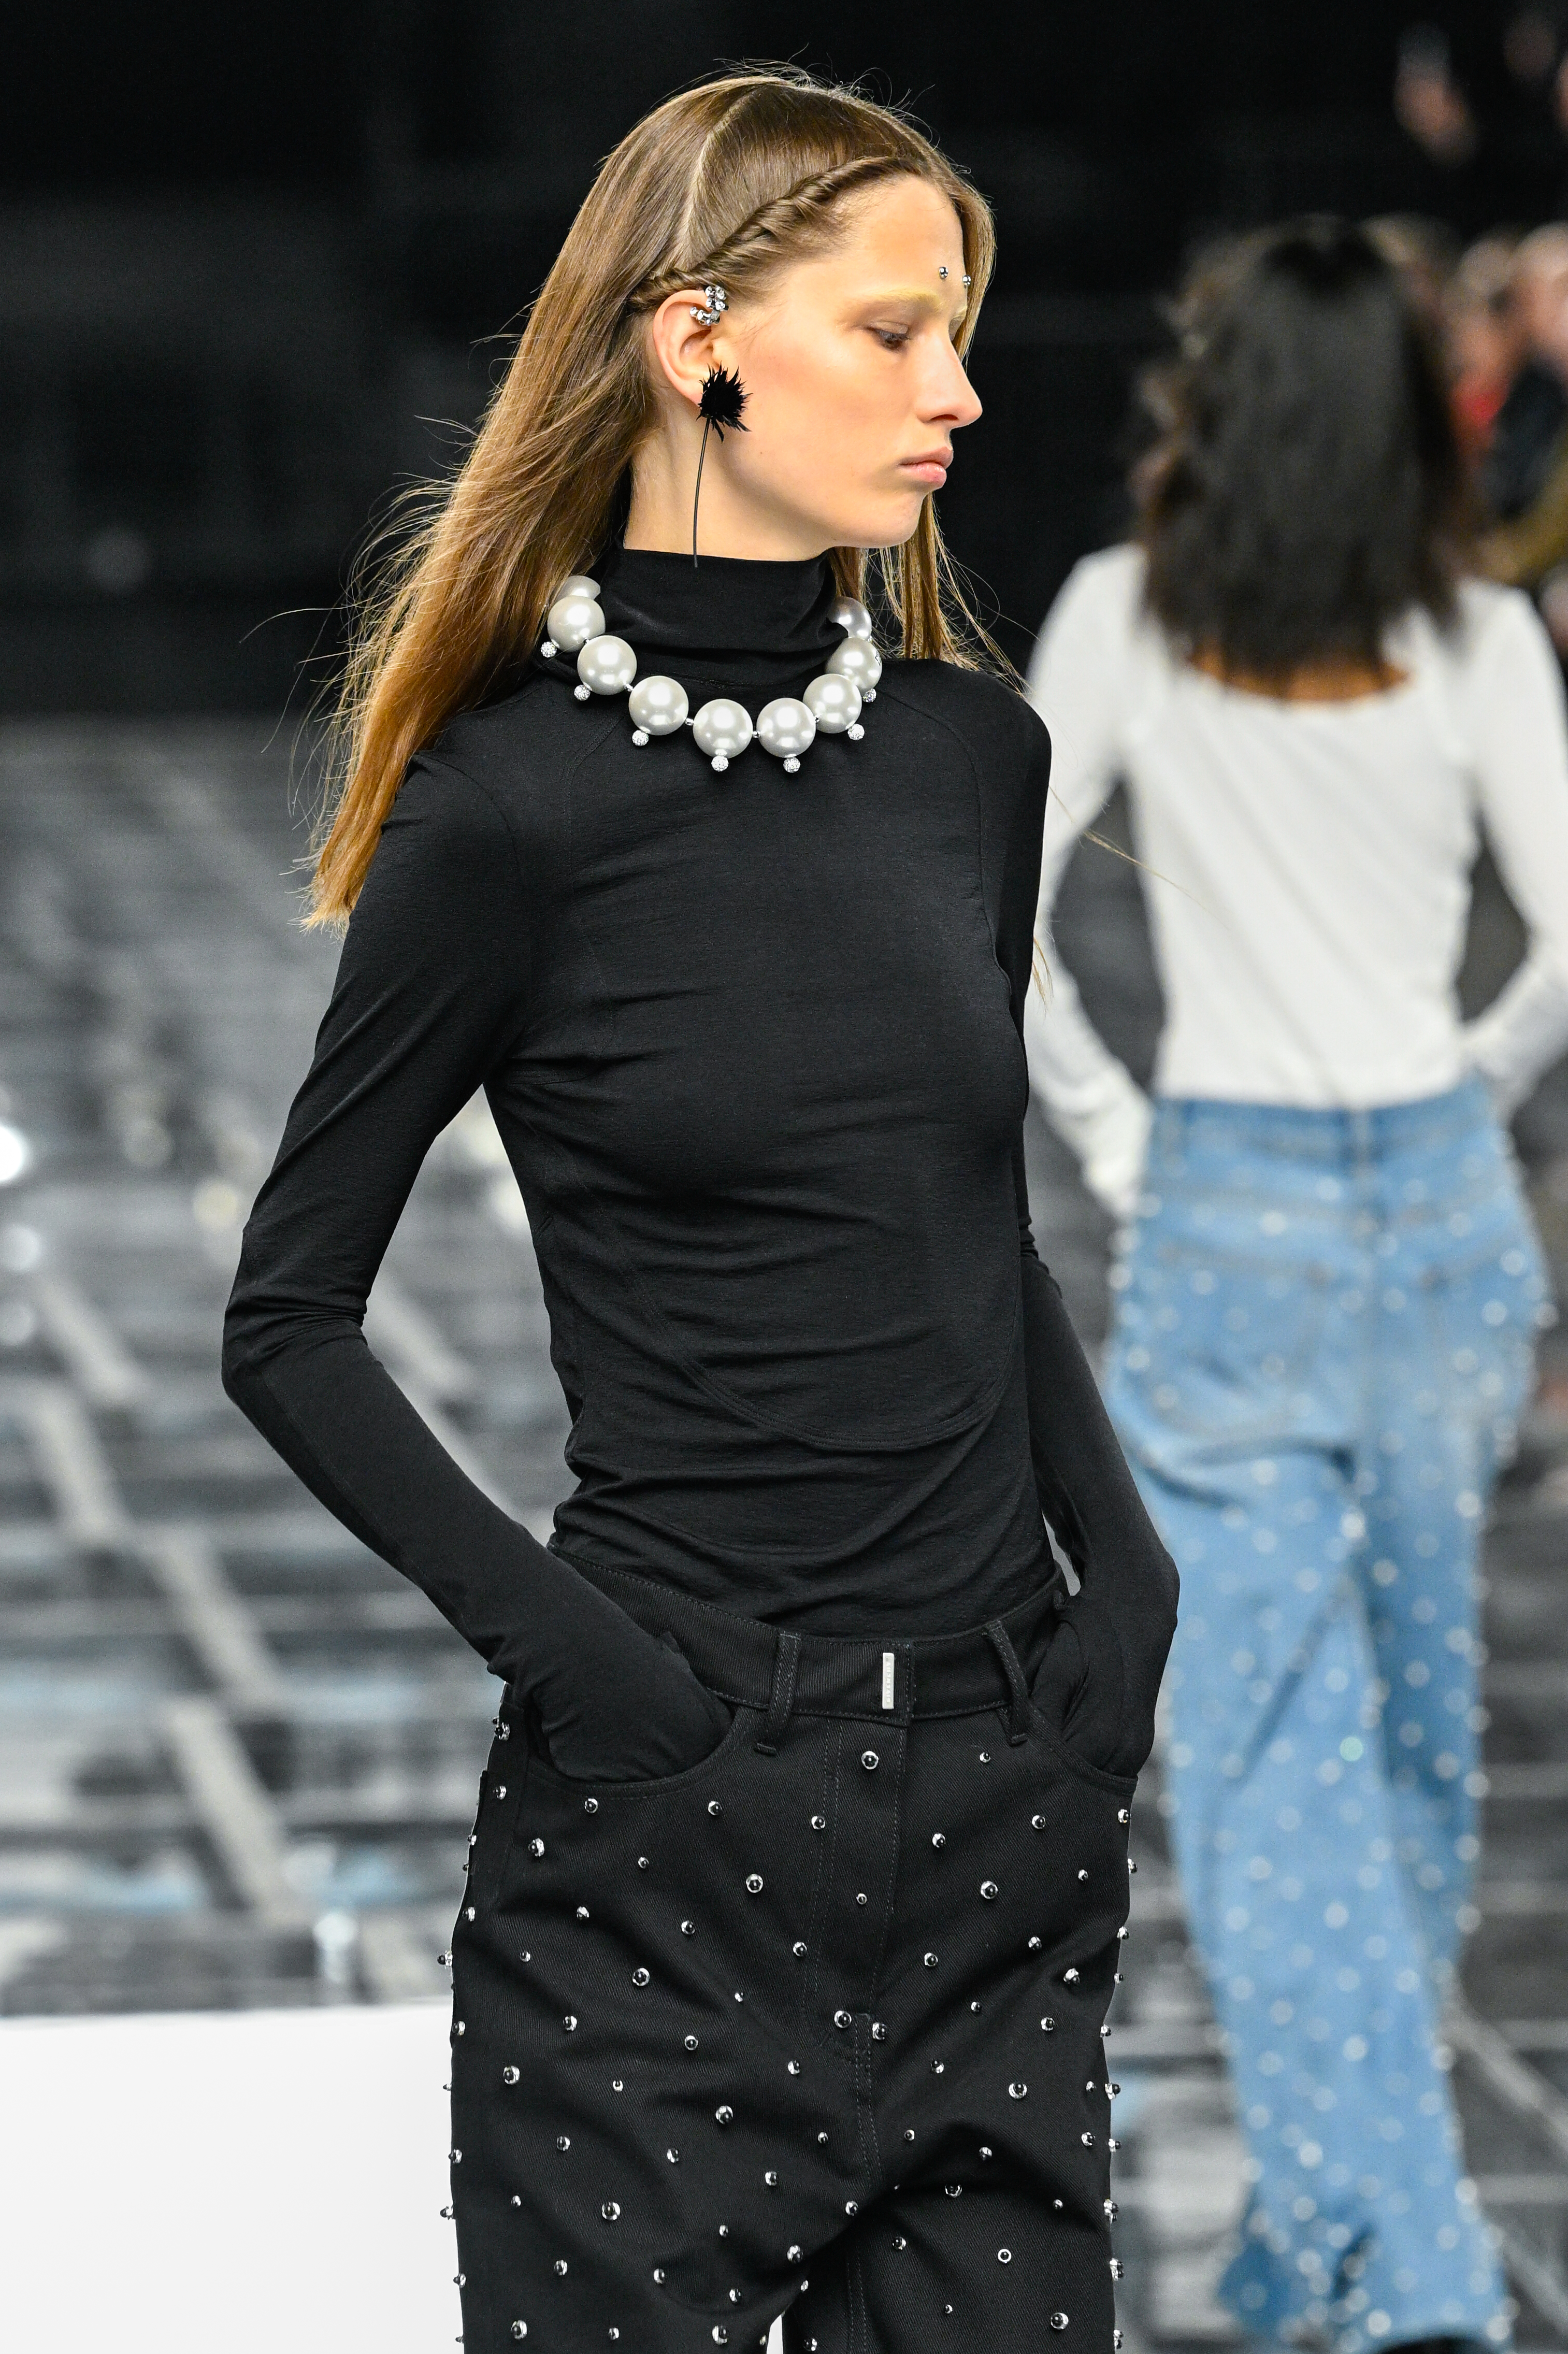 Modelo com look preto em desfile da Givenchy na semana de moda de Paris